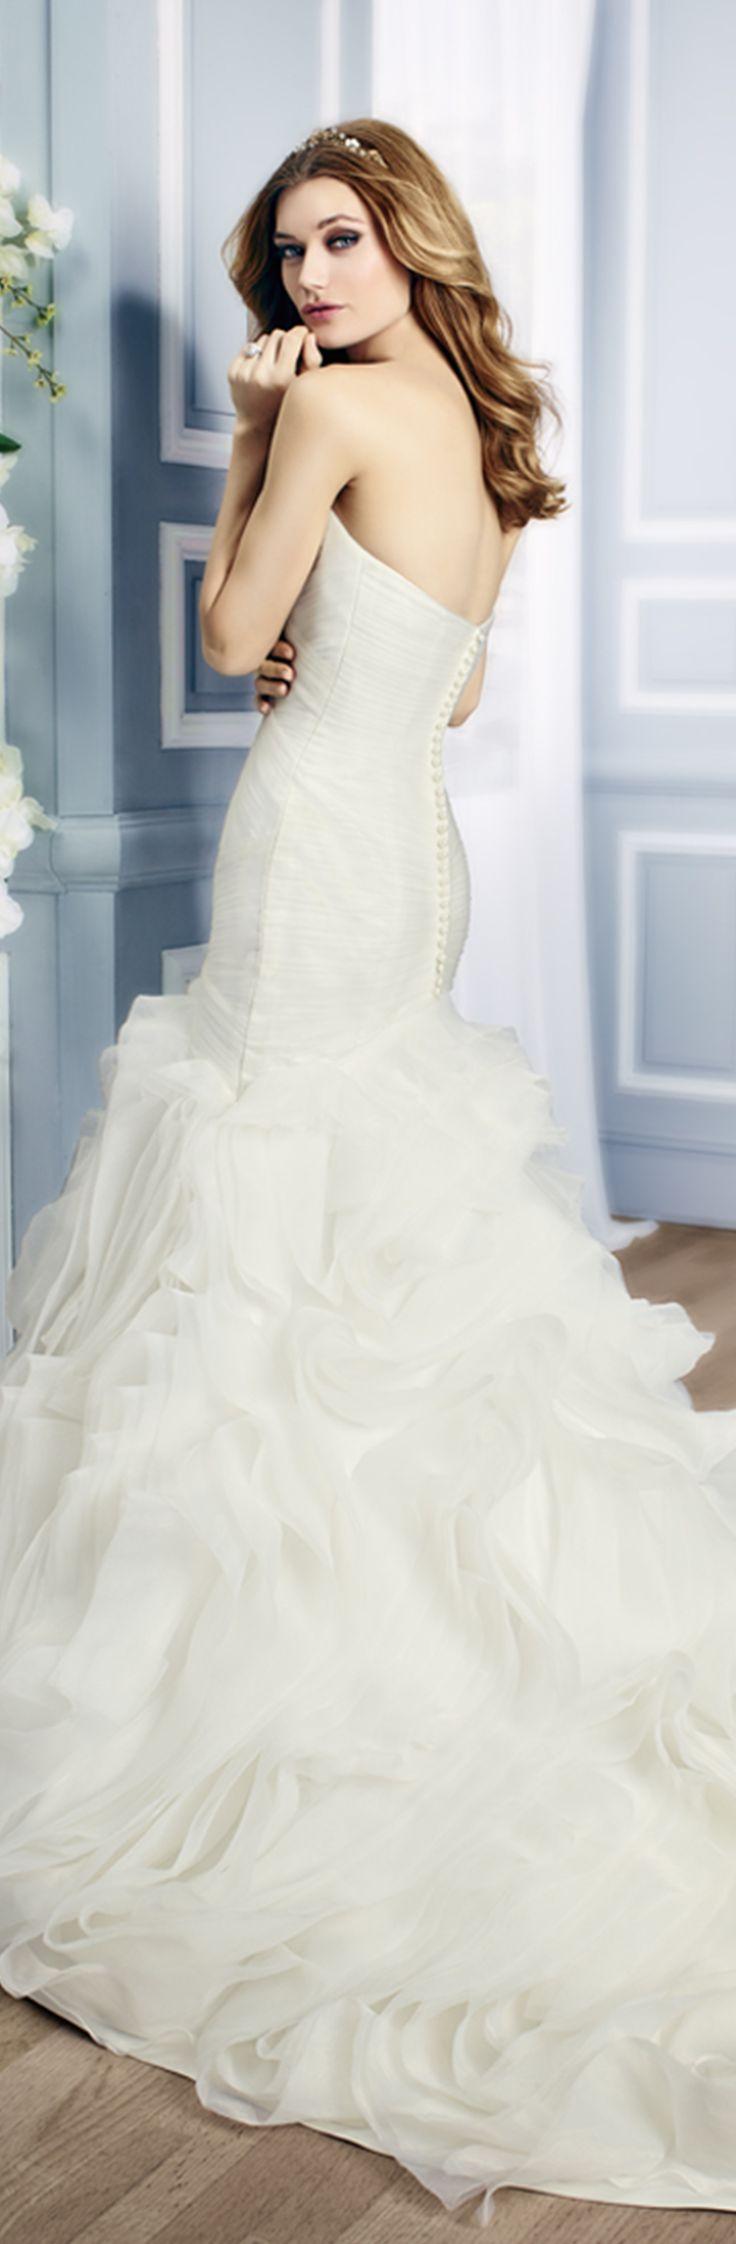 Hochzeit - Glamourous Drop Waist Wedding Dress With Ruffled Skirt 